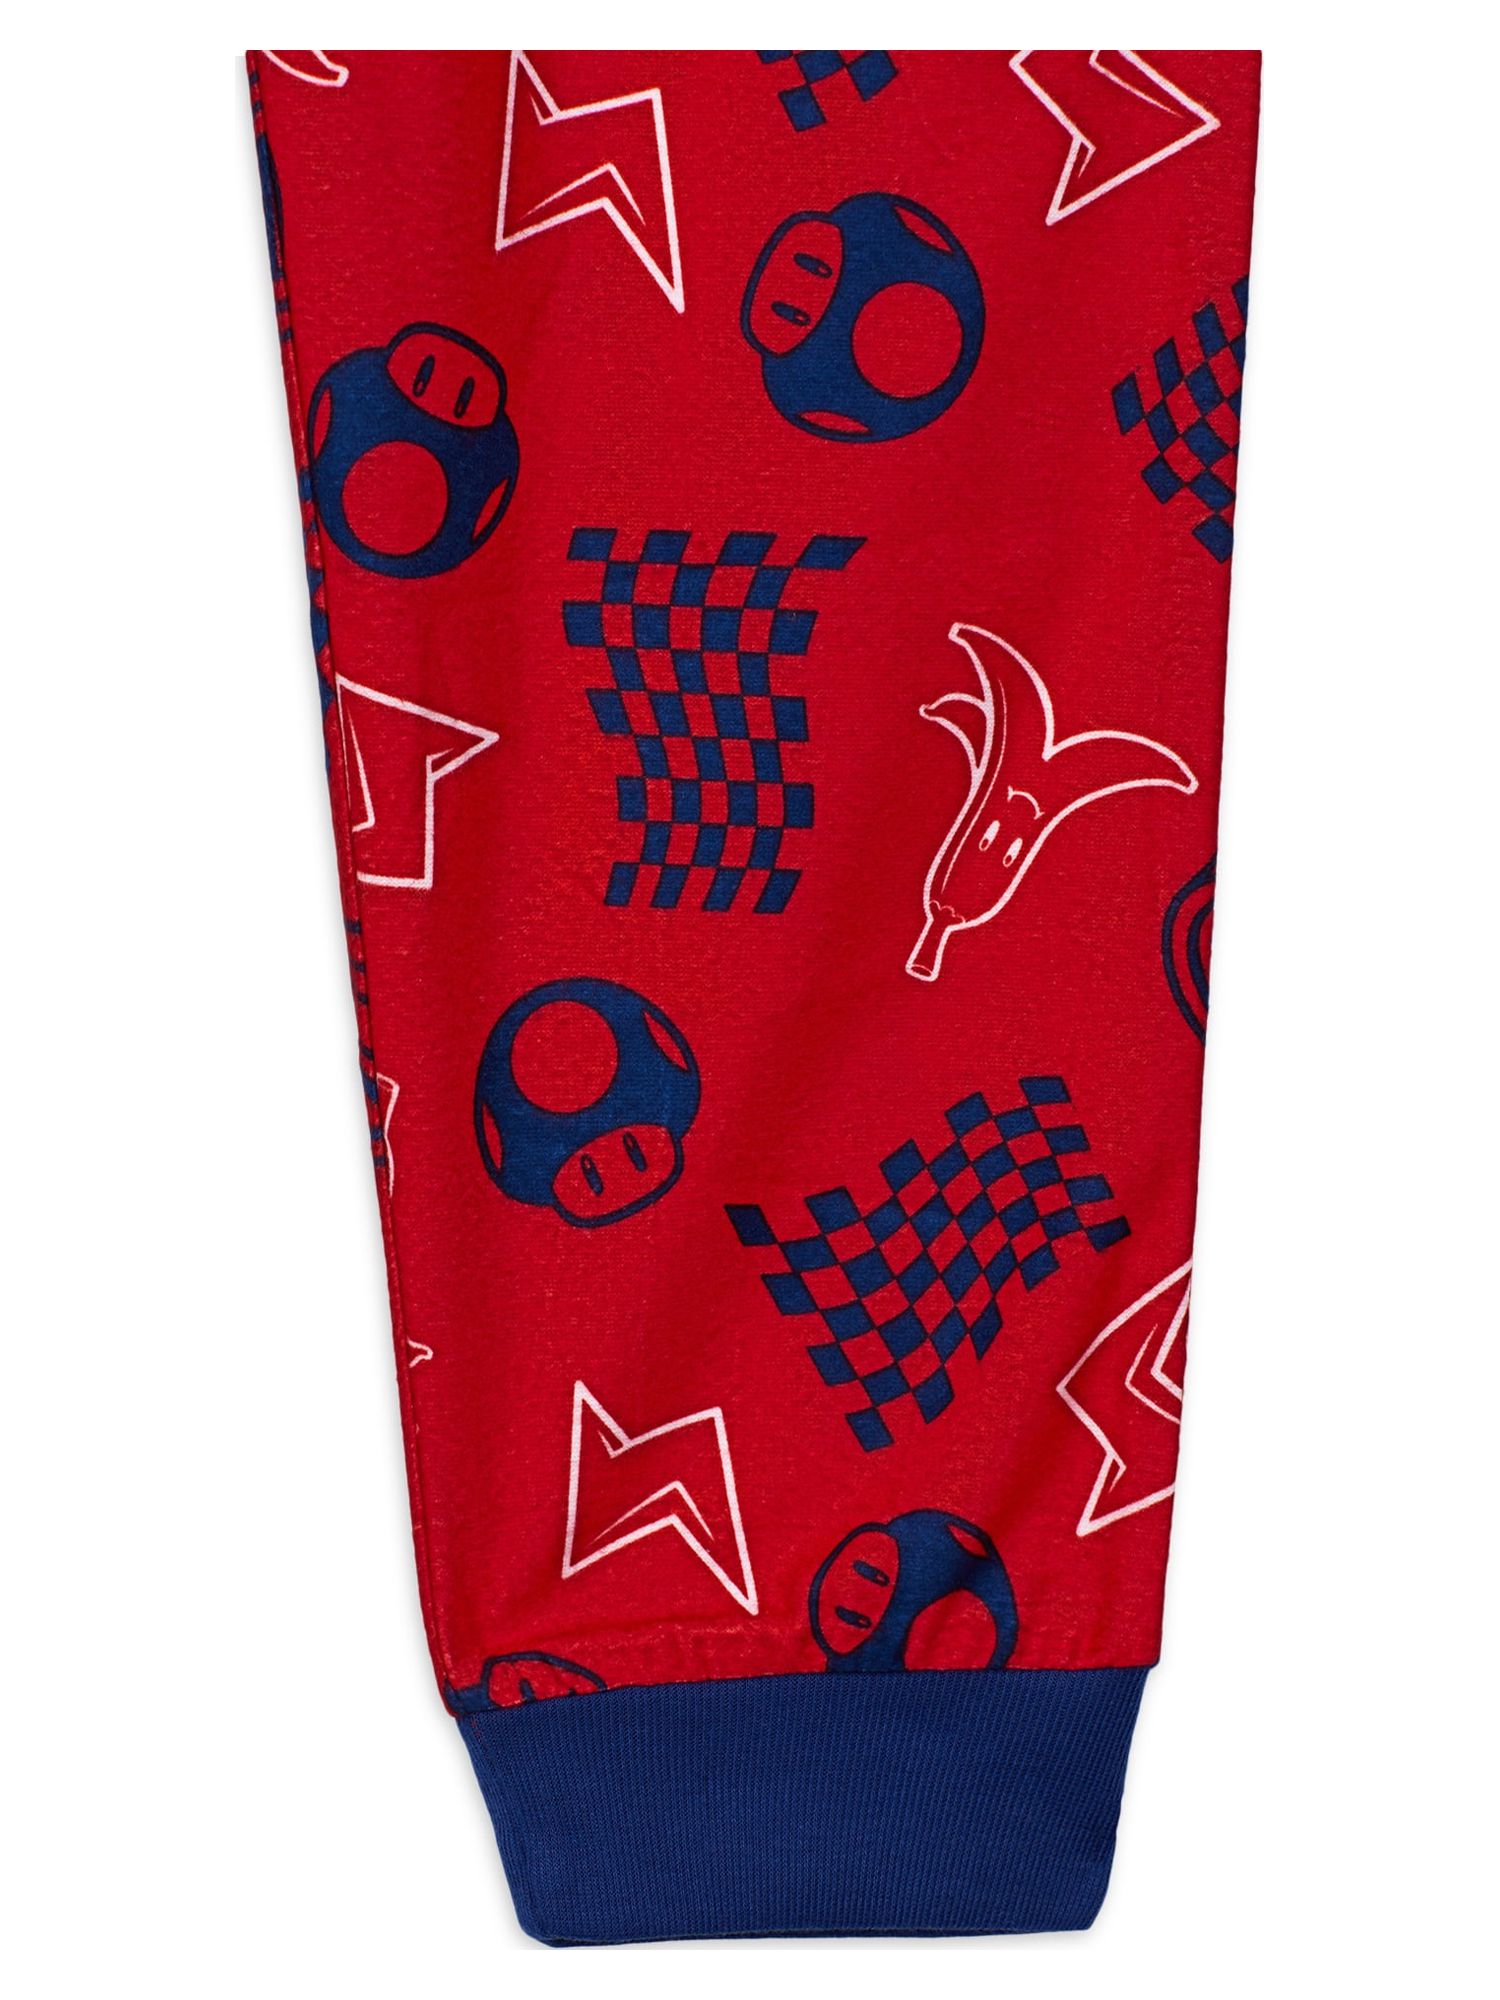 Mario Bro Boys Long Sleeve Pajamas Set, 2-Piece, Sizes 4-12 - image 3 of 4